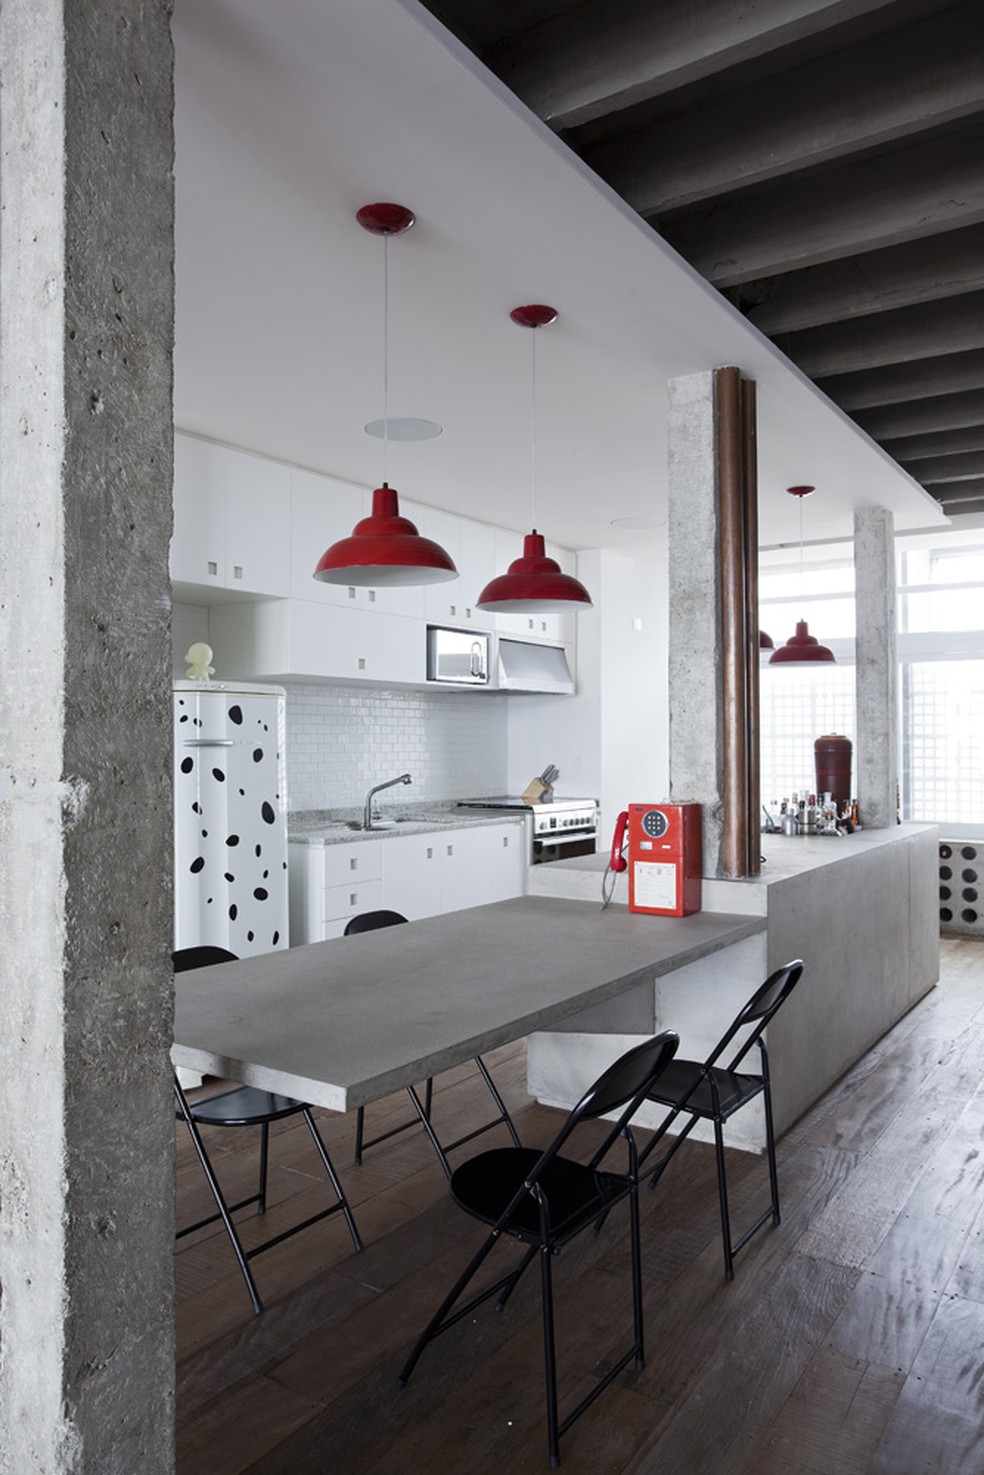 Apartamento de 140 m² com reforma assinada pelos arquitetos Felipe Hess e Renata Pedrosa — Foto: Fran Parente